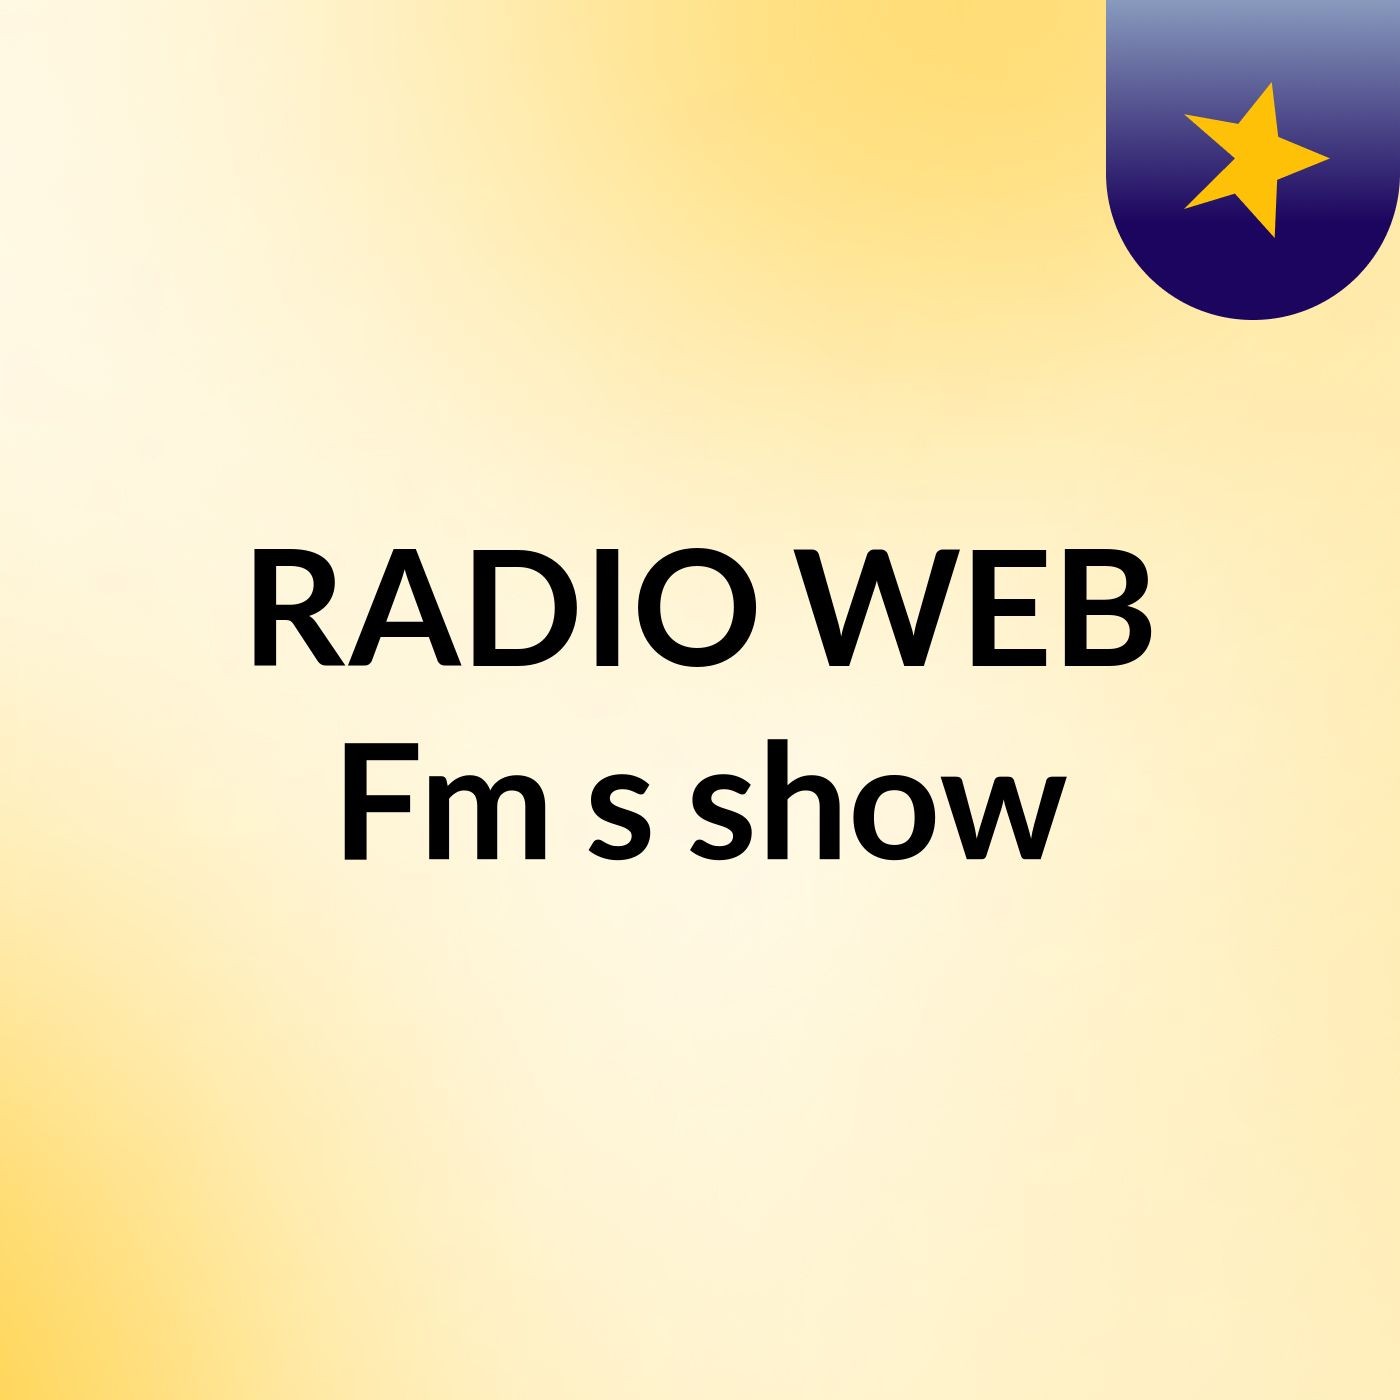 RADIO WEB Fm's show